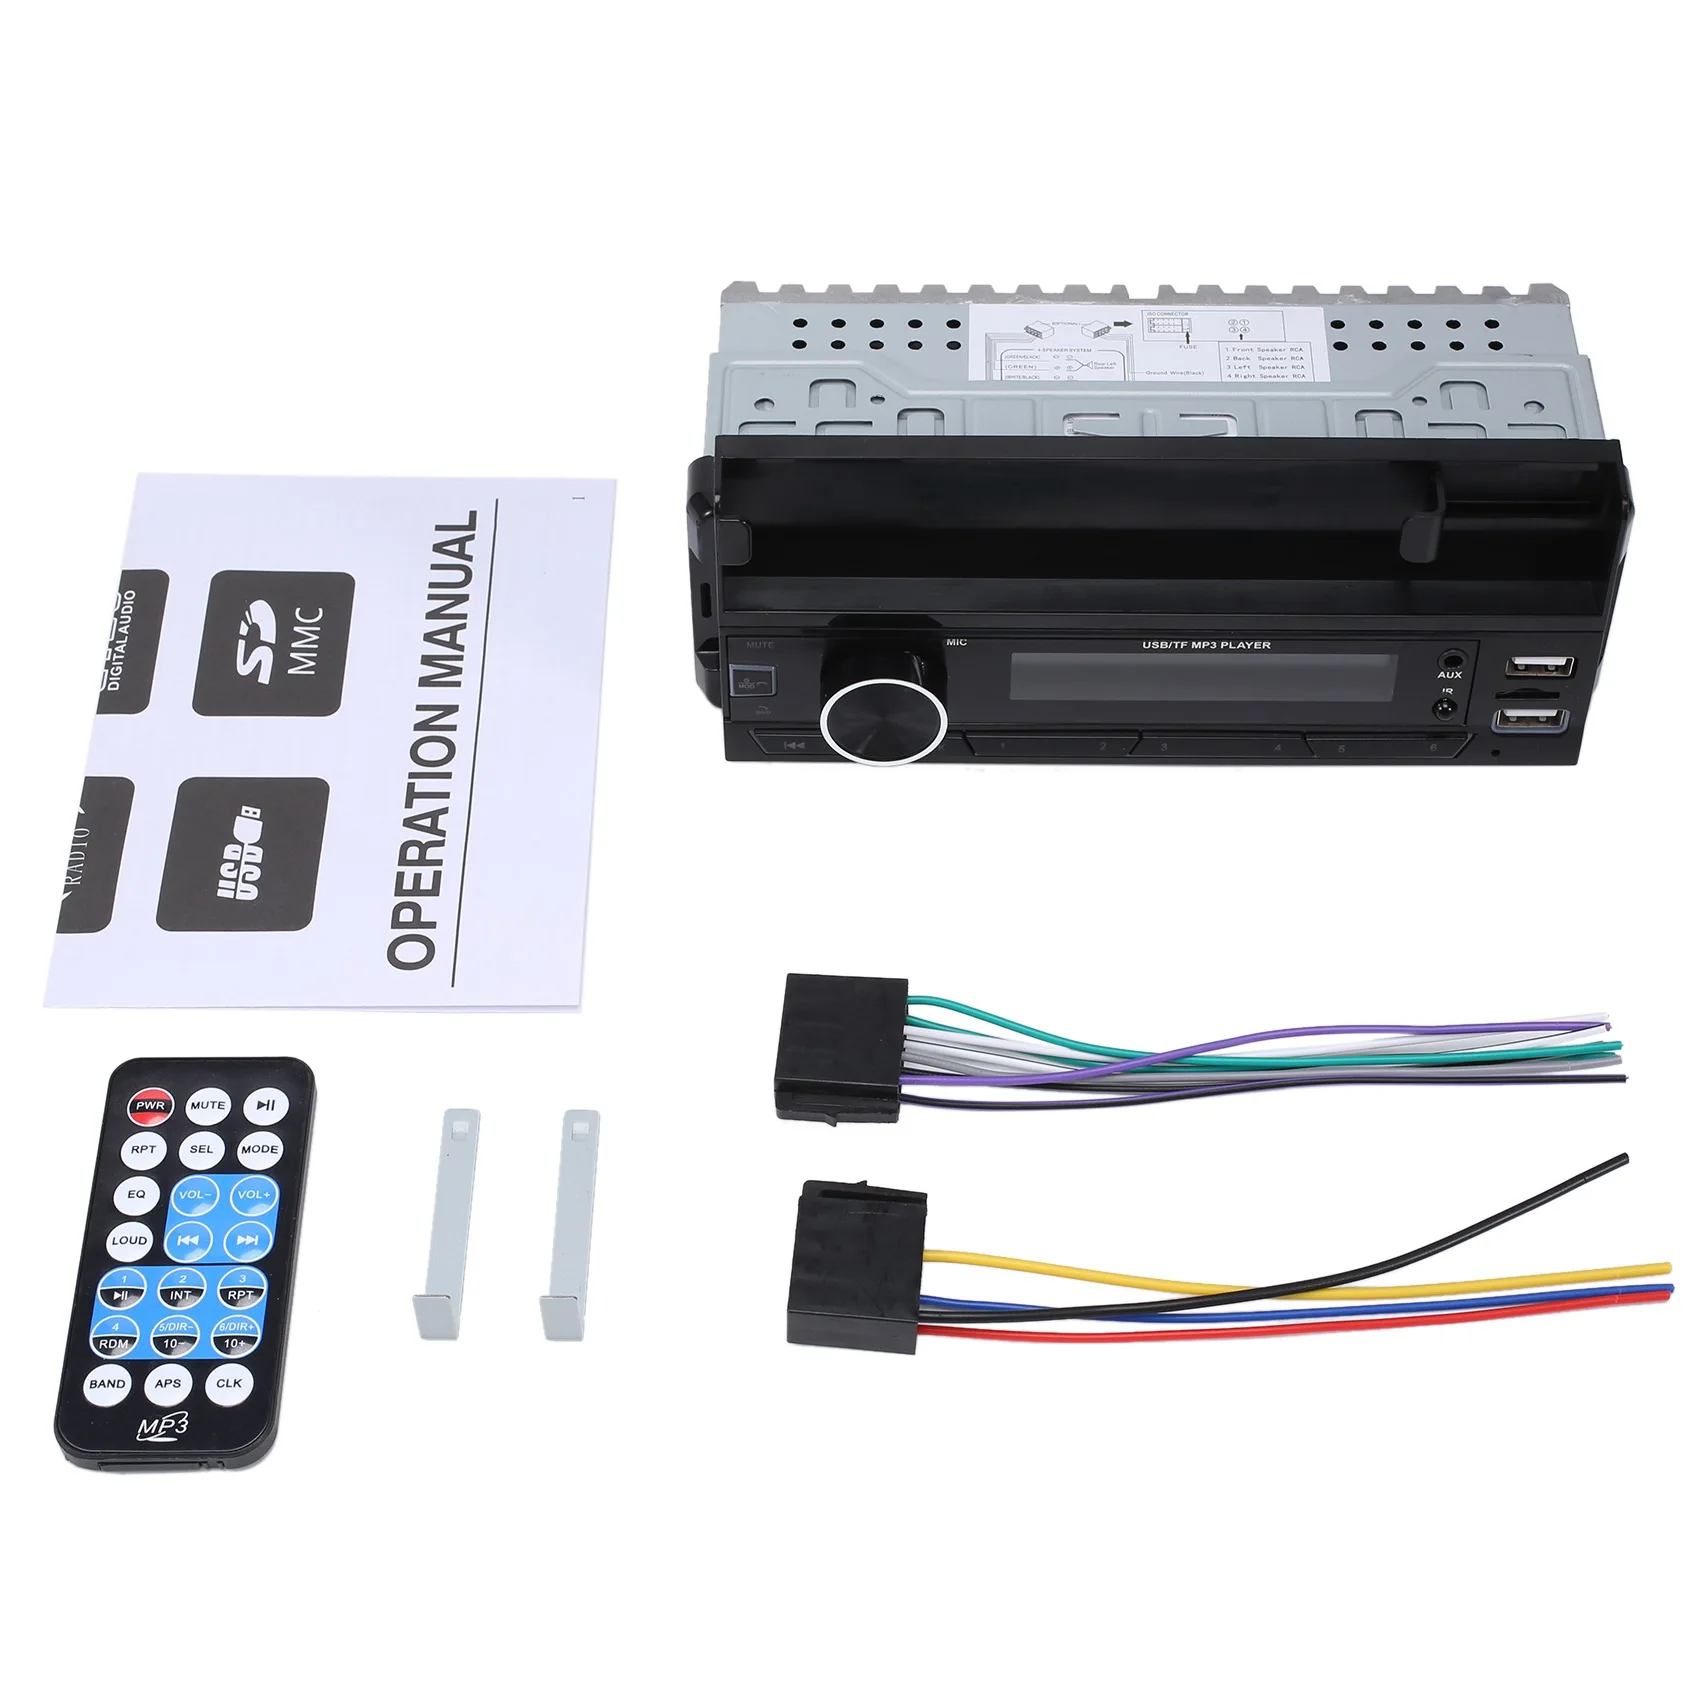 

Автомагнитола 1Din, Авторадио, Bluetooth, 12 В, автомобильный аудиоплеер, Mp3, FM-радио, музыка, USB/SD, вход AUX В приборную панель с держателем ISO